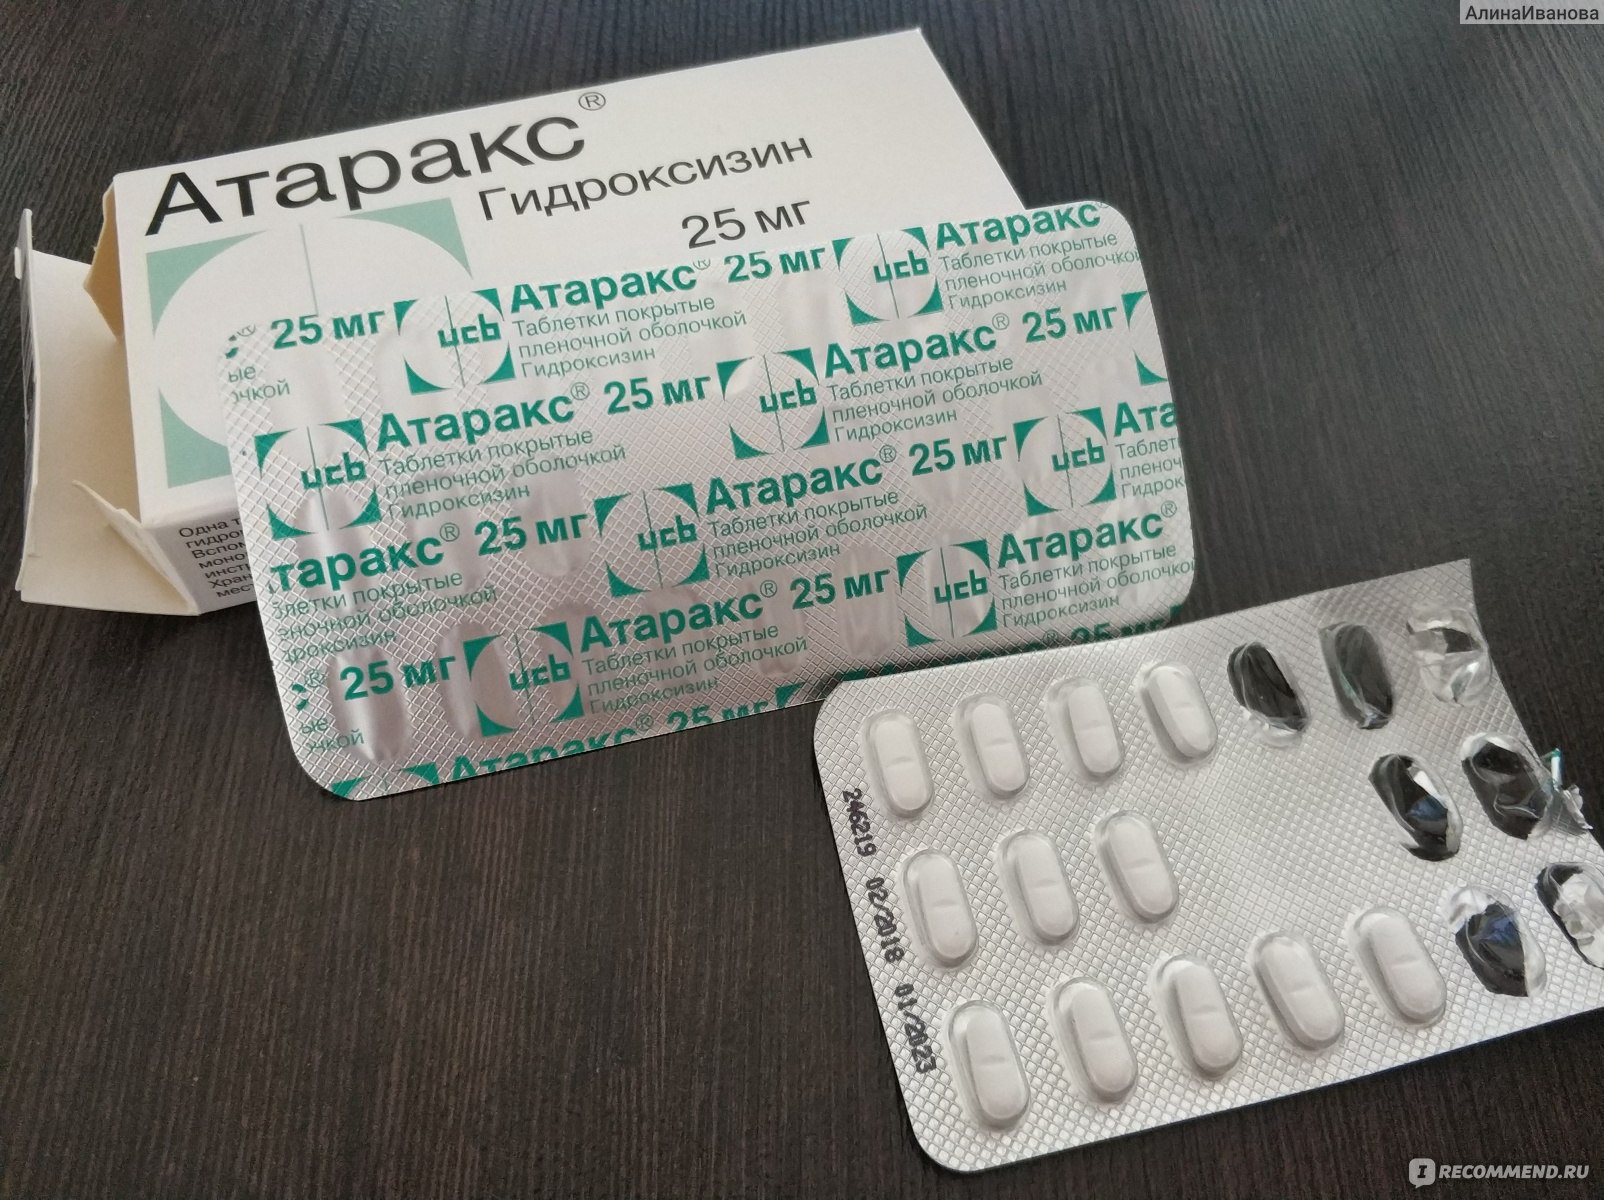 Атаракс таблетки инструкция отзывы врачей и пациентов